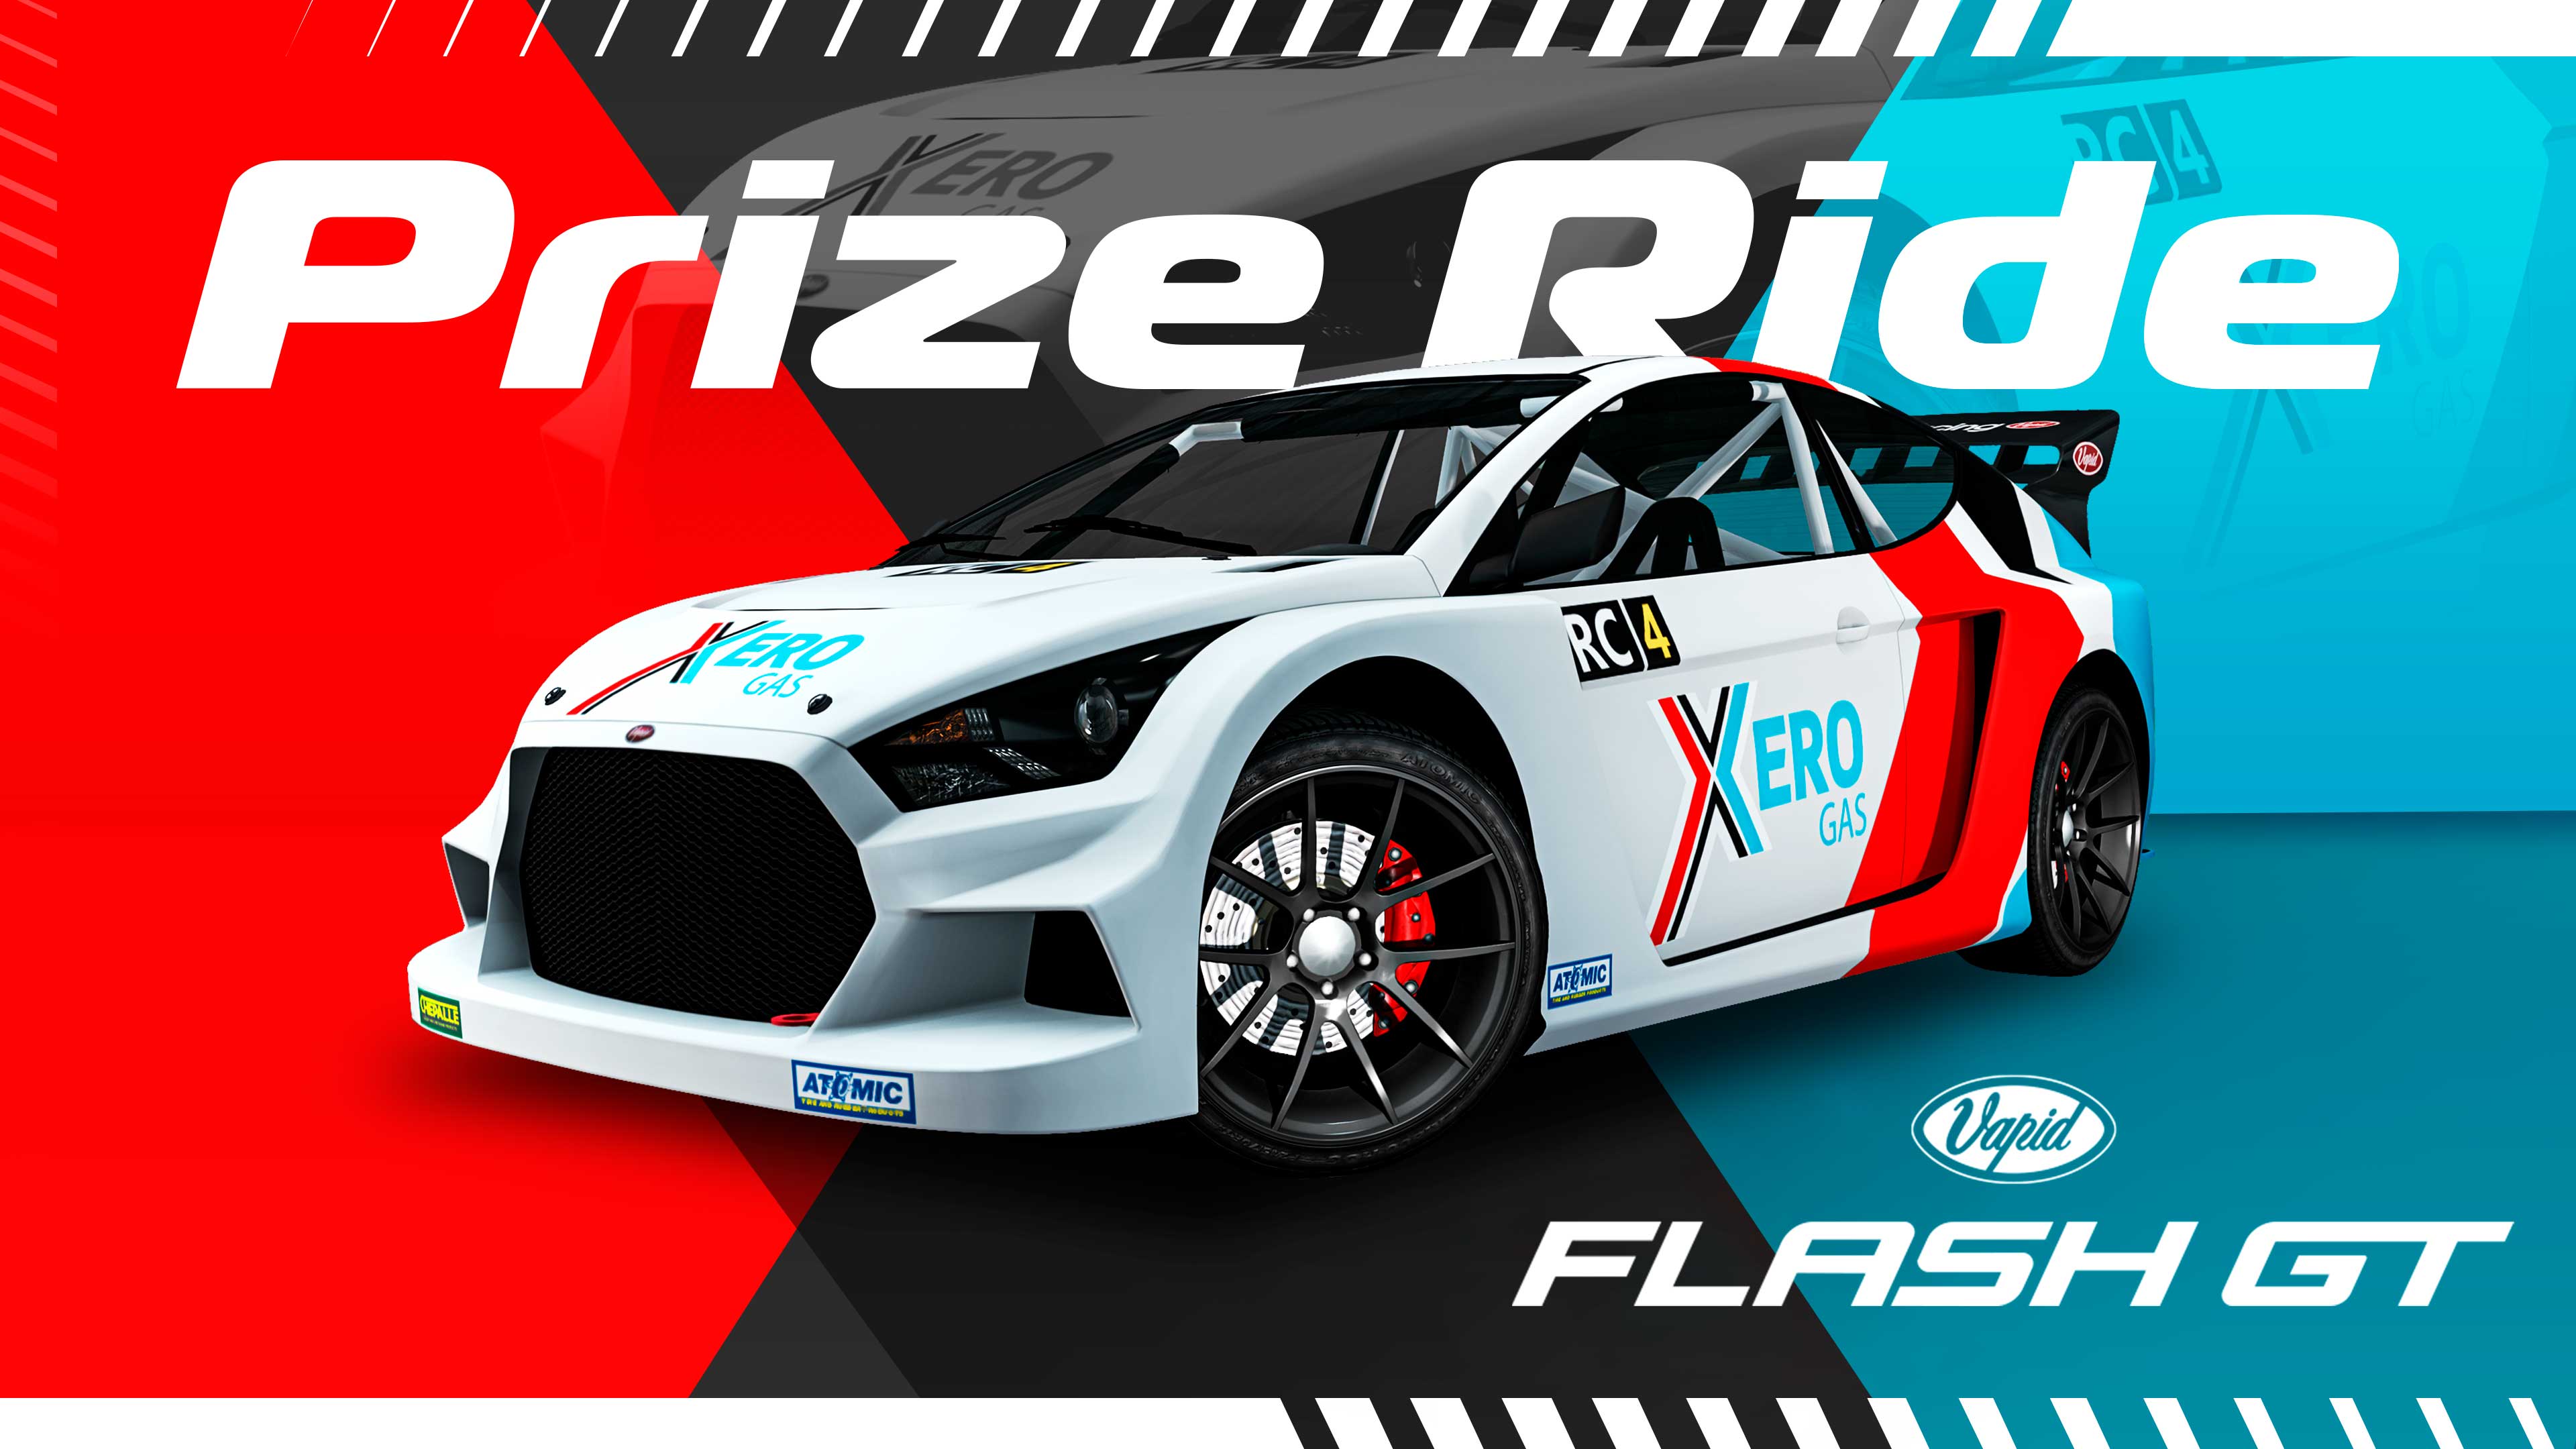 GTA Online Los Santos Tuners Prize Ride: Vapid Flash GT